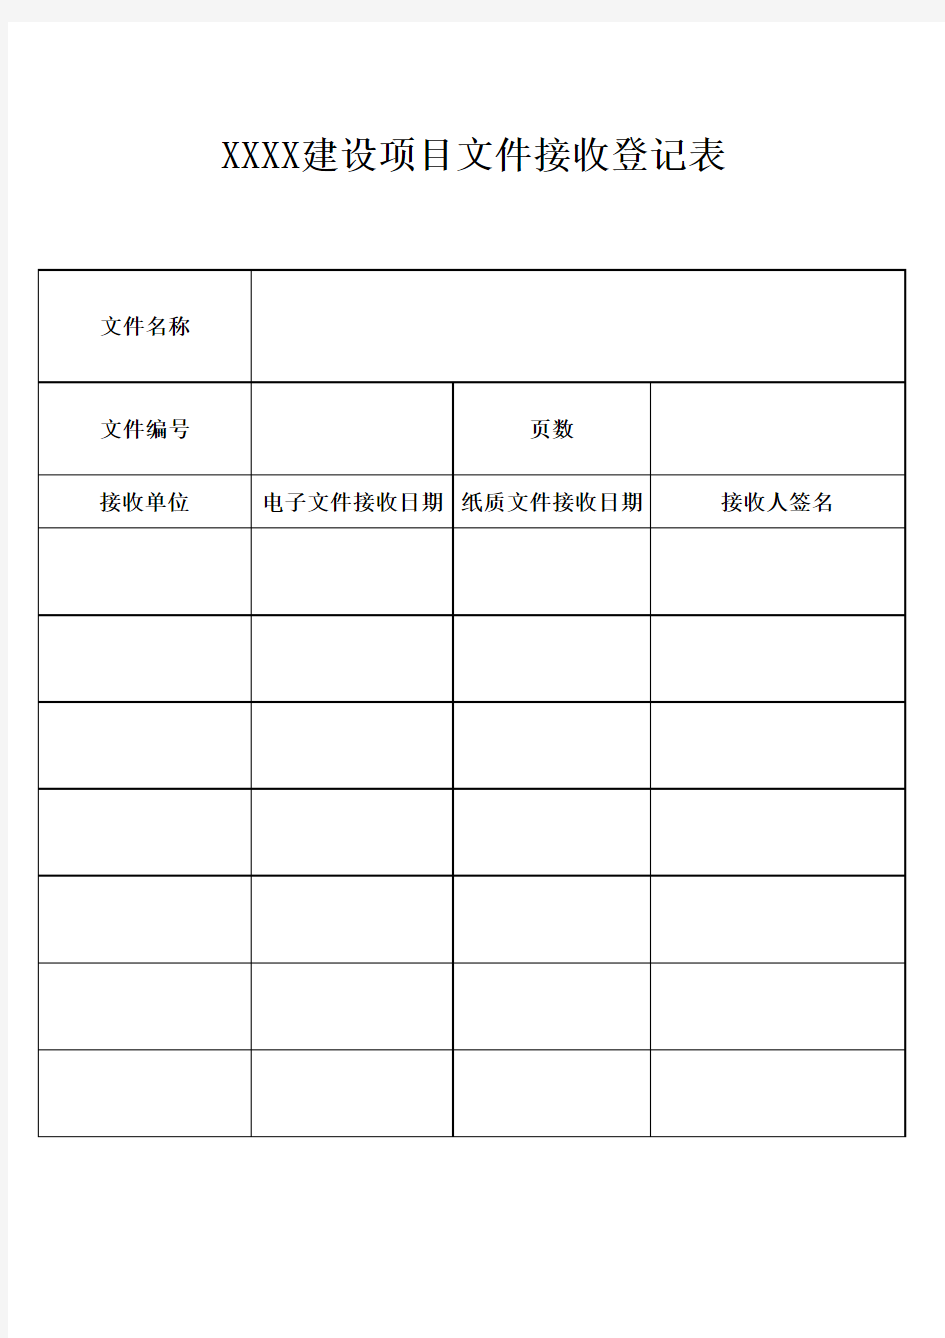 工程项目文件接收登记表